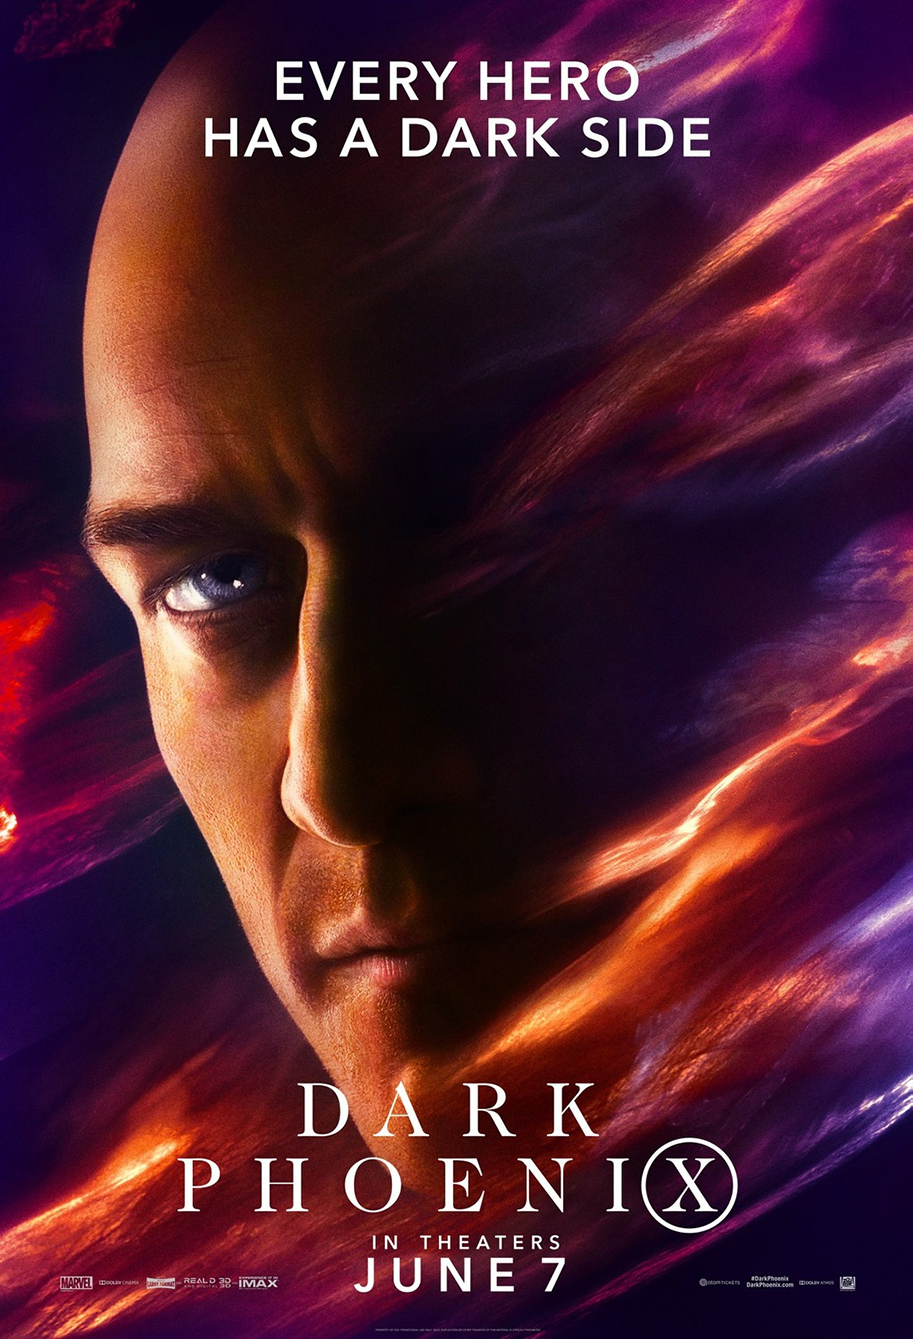 X-Men Dark Phoenix 2019 Movie Poster Wallpapers